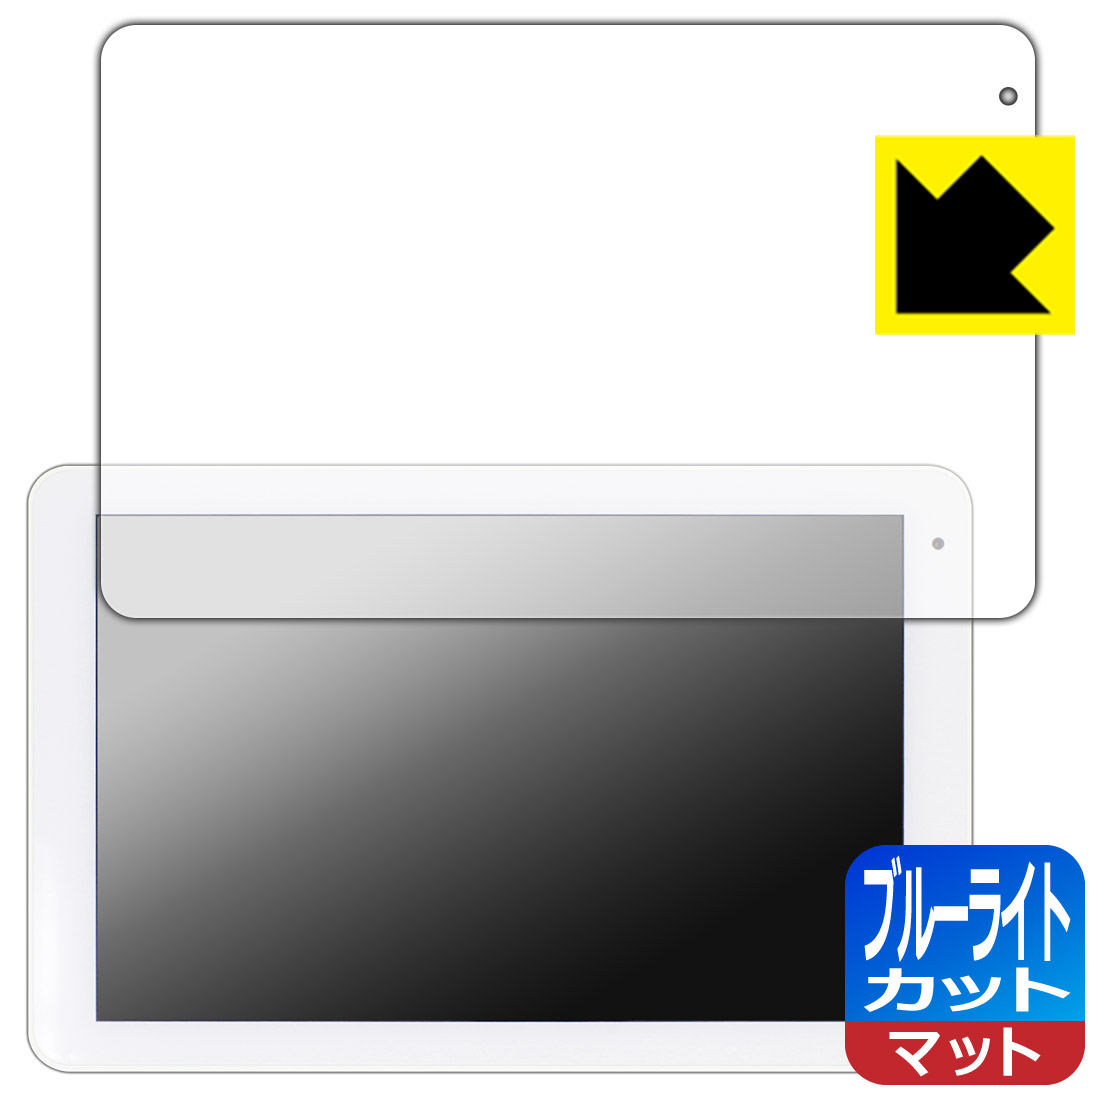 ブルーライトカット【反射低減】保護フィルム コミュファ光 10.1インチ タブレット AT-10 日本製 自社製造直販